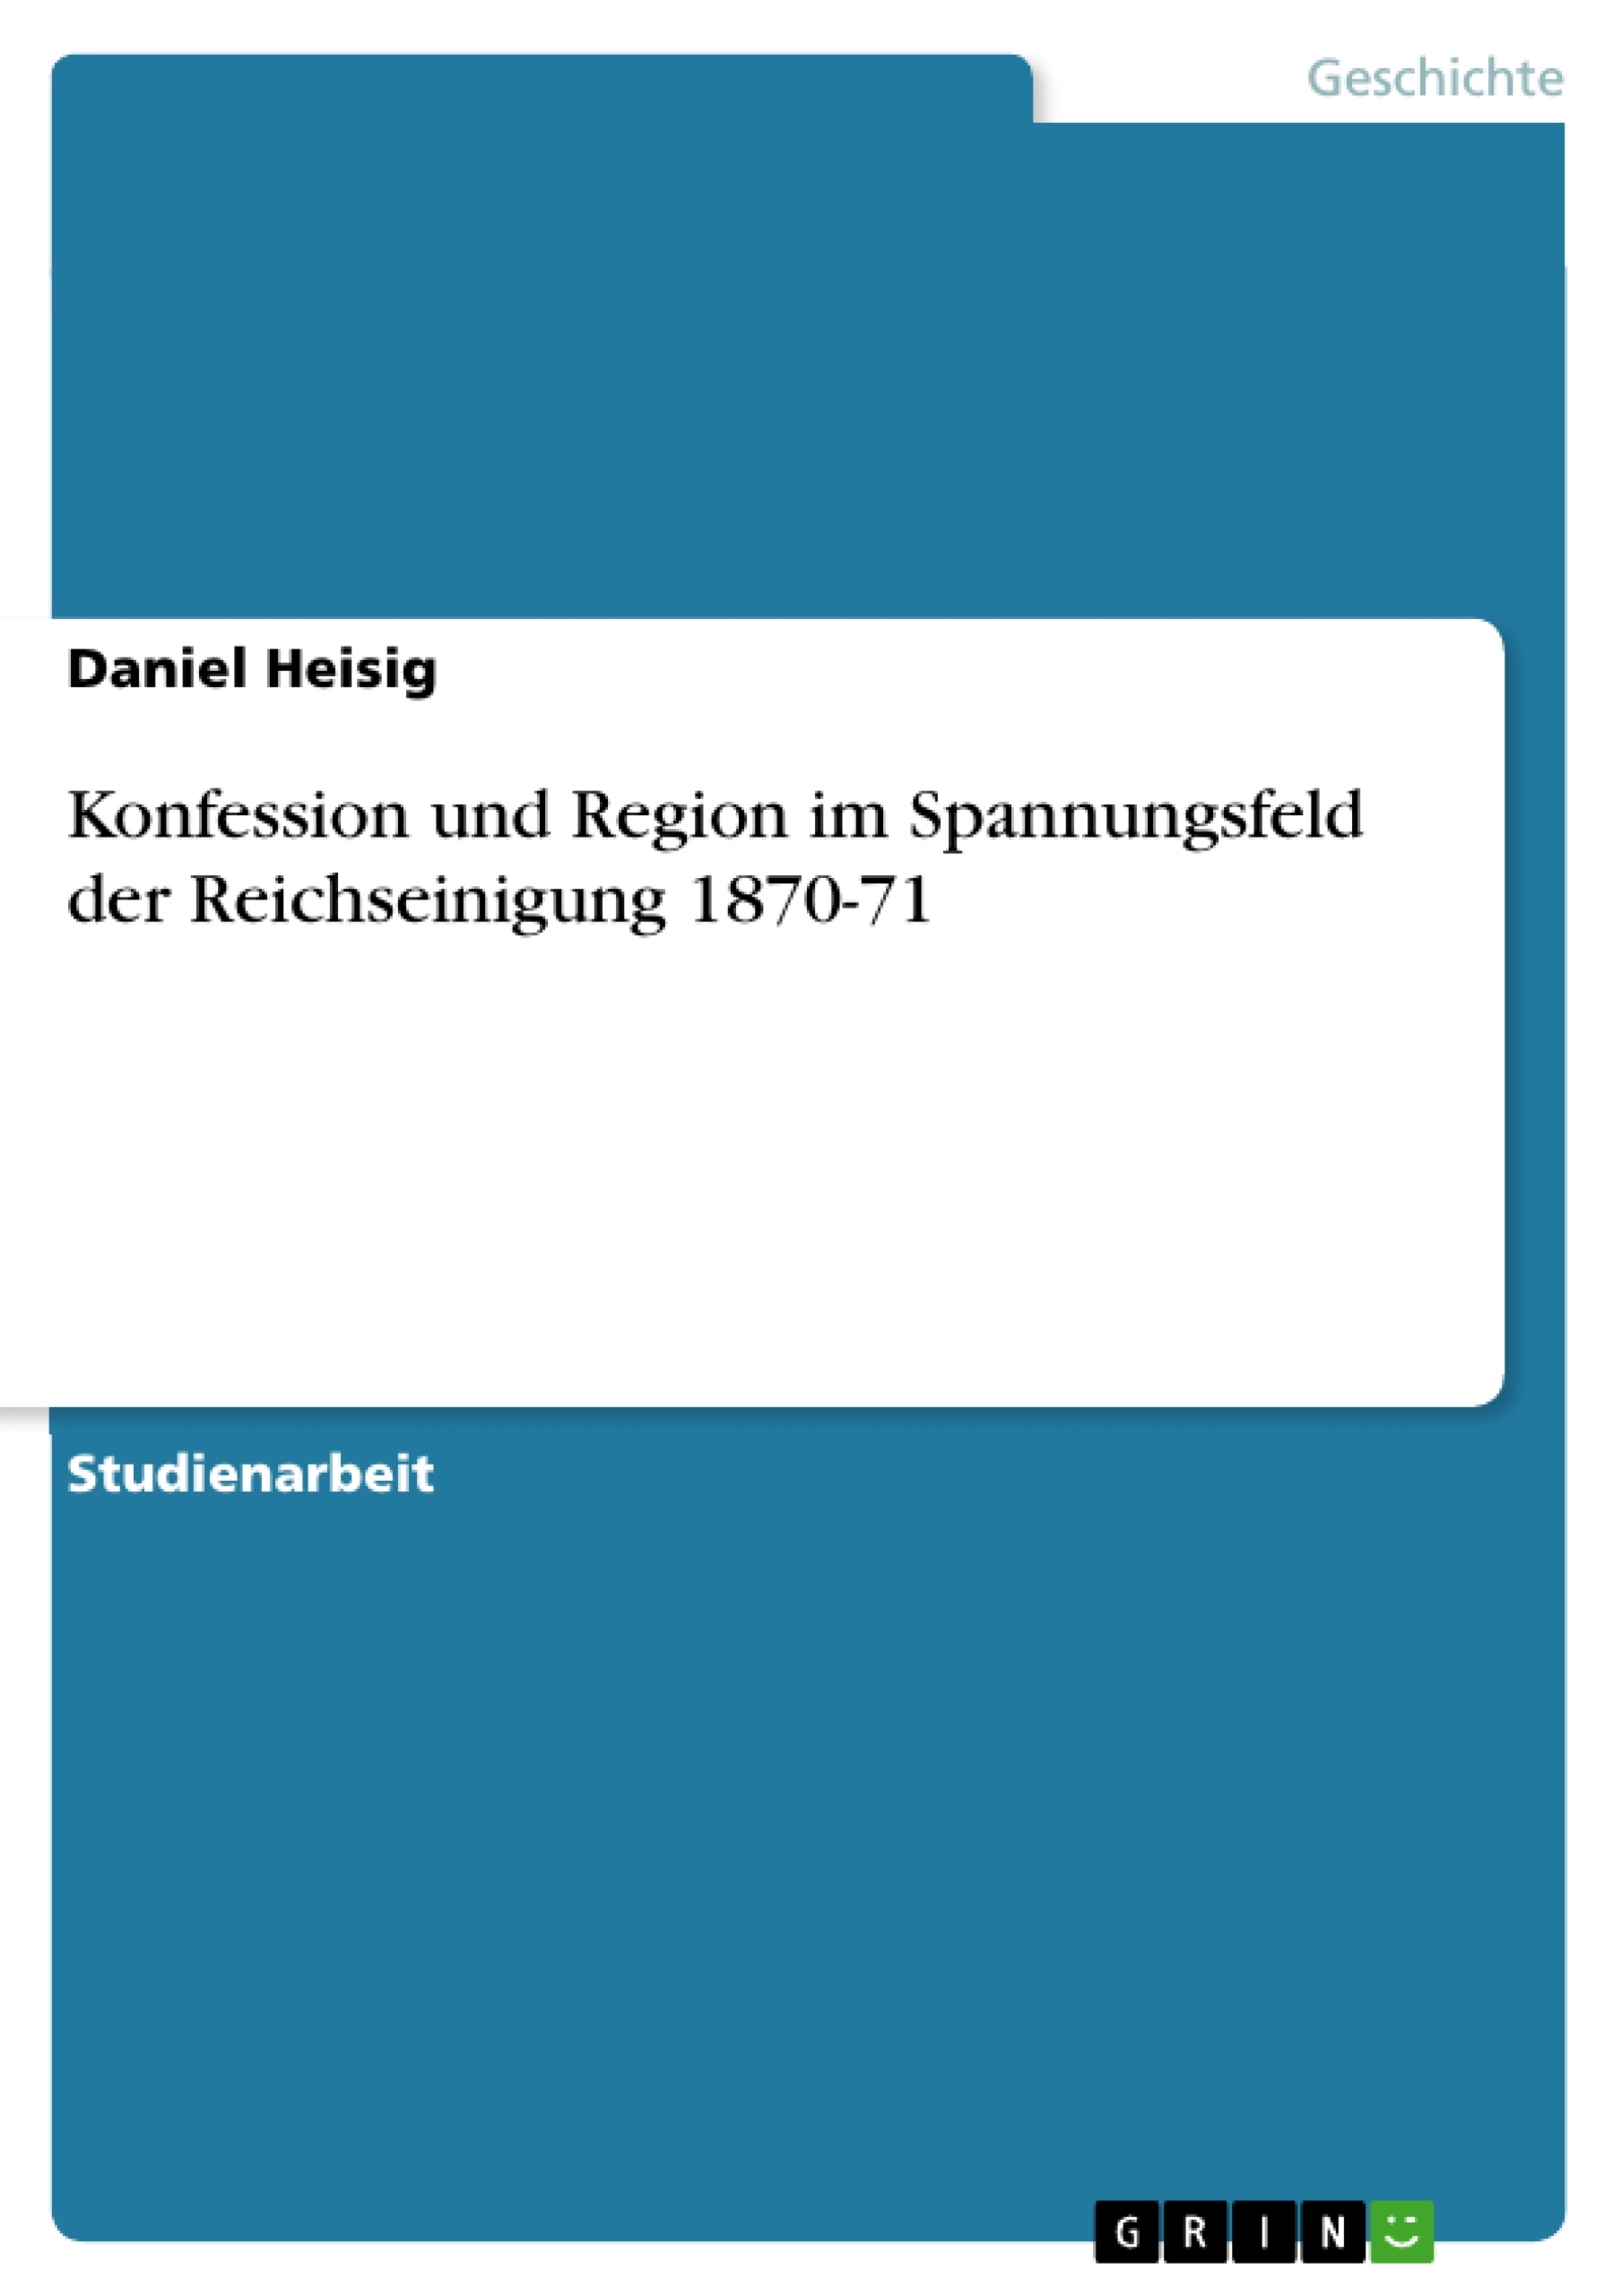 Title: Konfession und Region im Spannungsfeld der Reichseinigung 1870-71